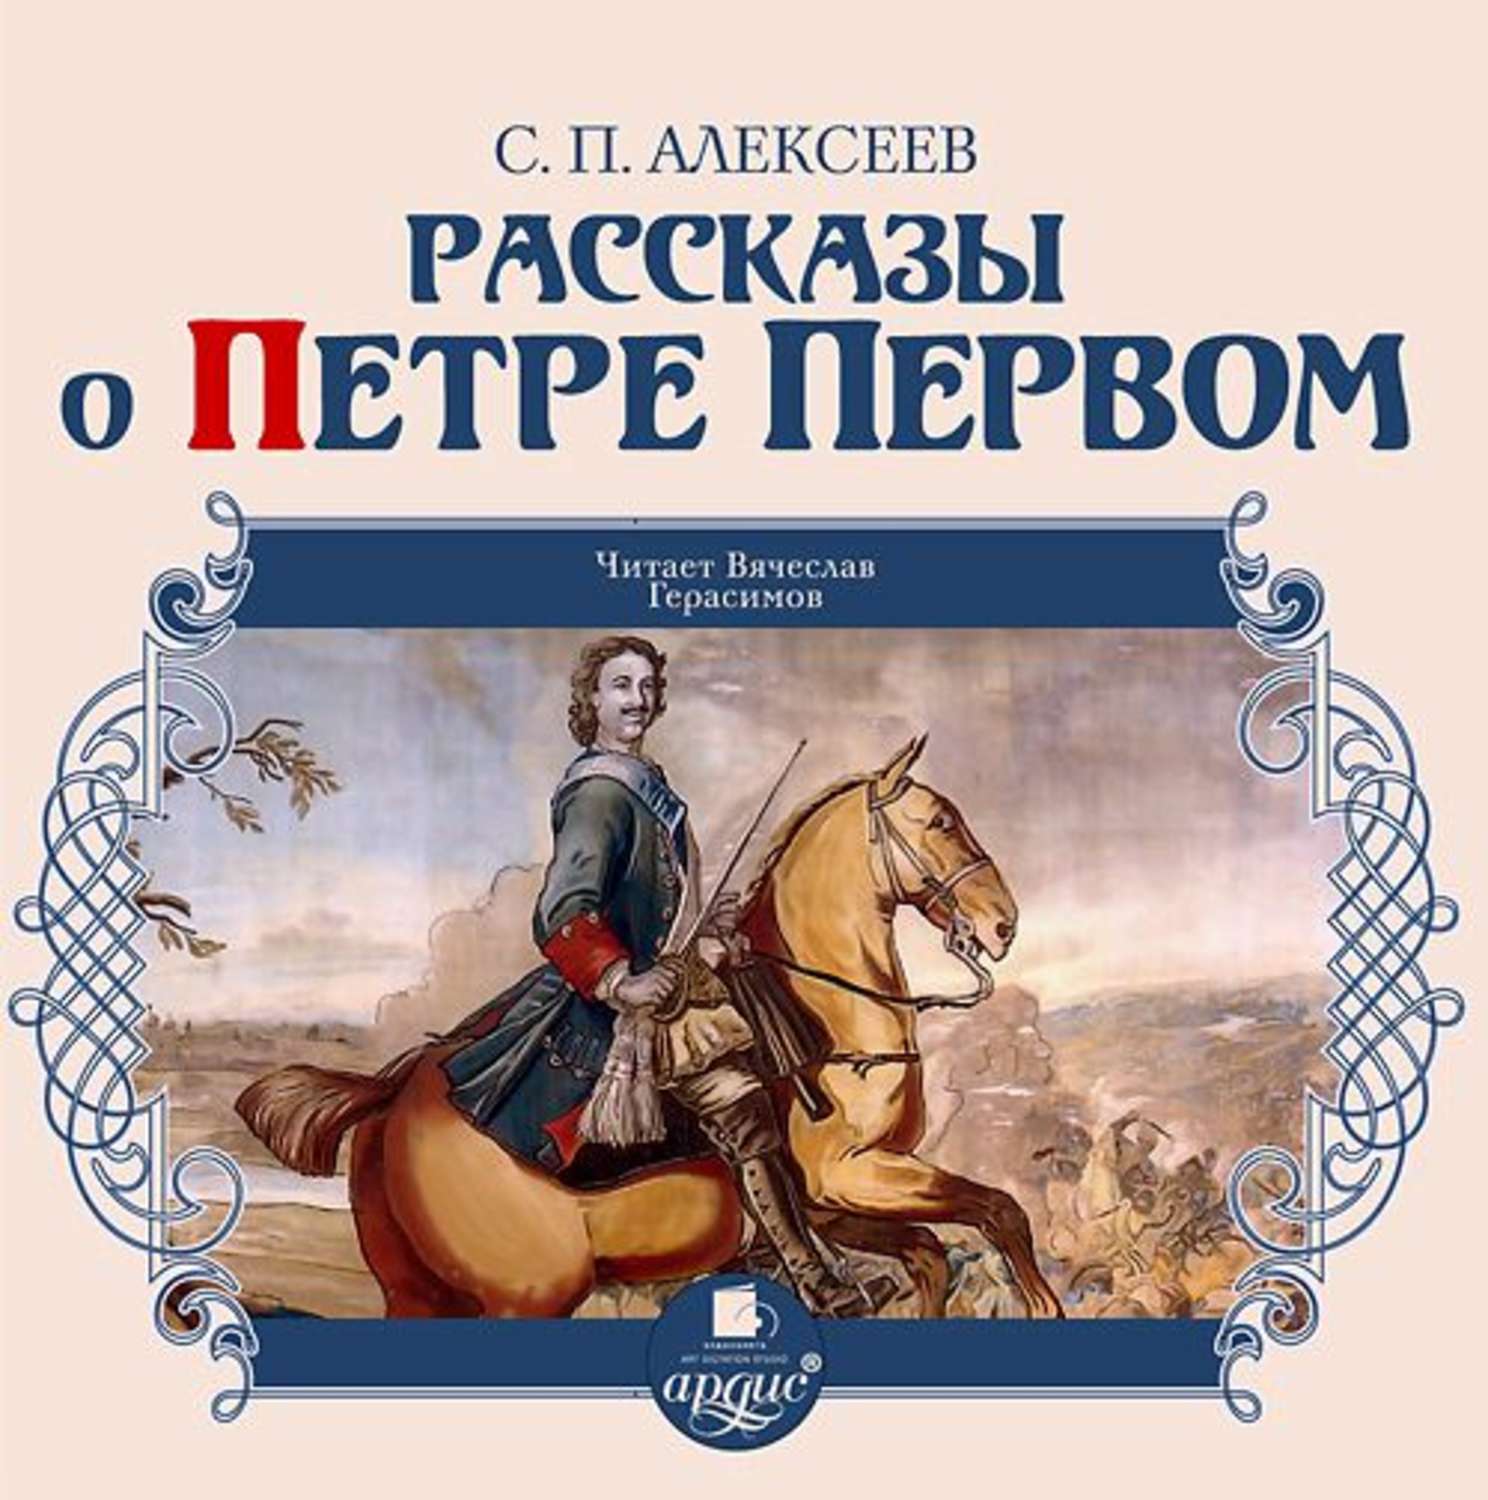 Алексеев история музыки. Книги о Петре первом Алексеева для детей.